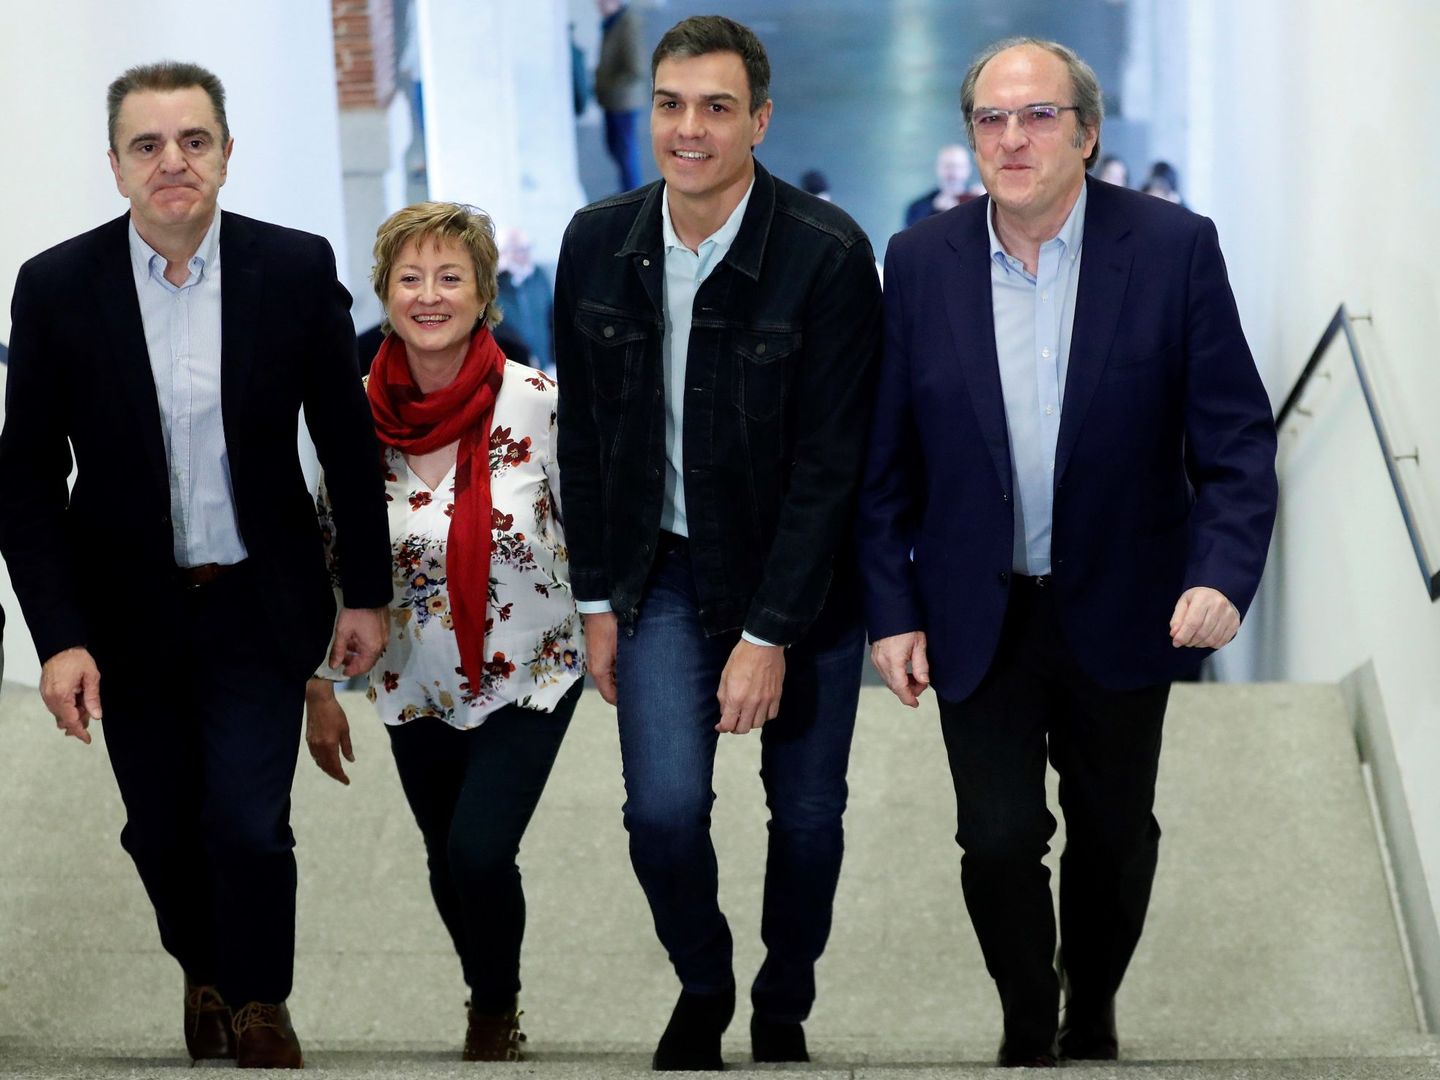 José Manuel Franco, Carmen Barahona, Pedro Sánchez y Ángel Gabilondo, el 7 de abril de 2018. (EFE)